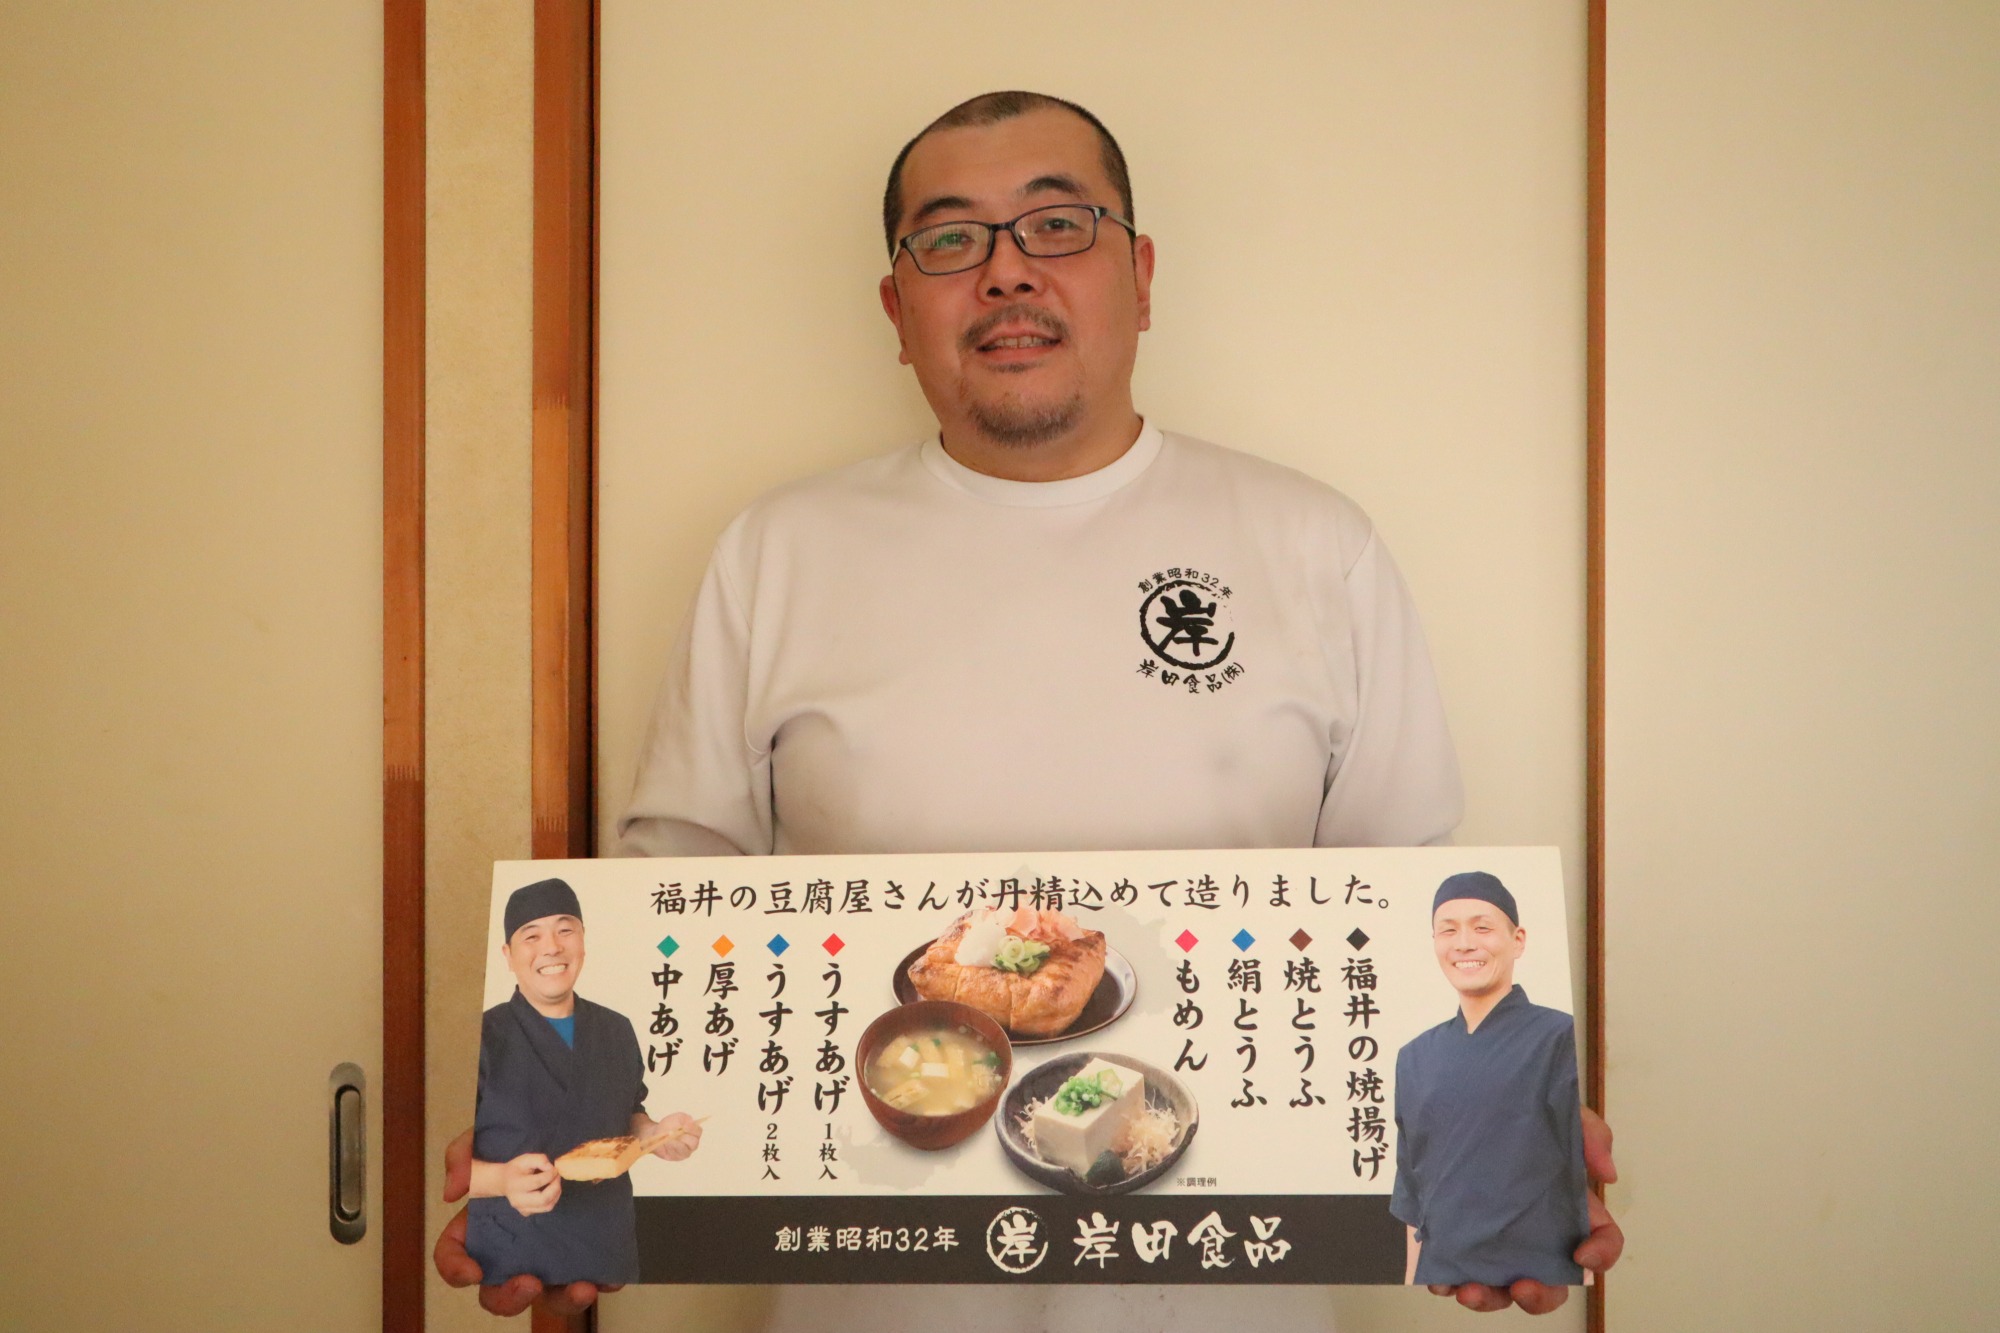 3代目の岸田和弘さん！生まれた時から常にお揚げやお豆腐のある日々を過ごしています。とても気さくなお人柄！